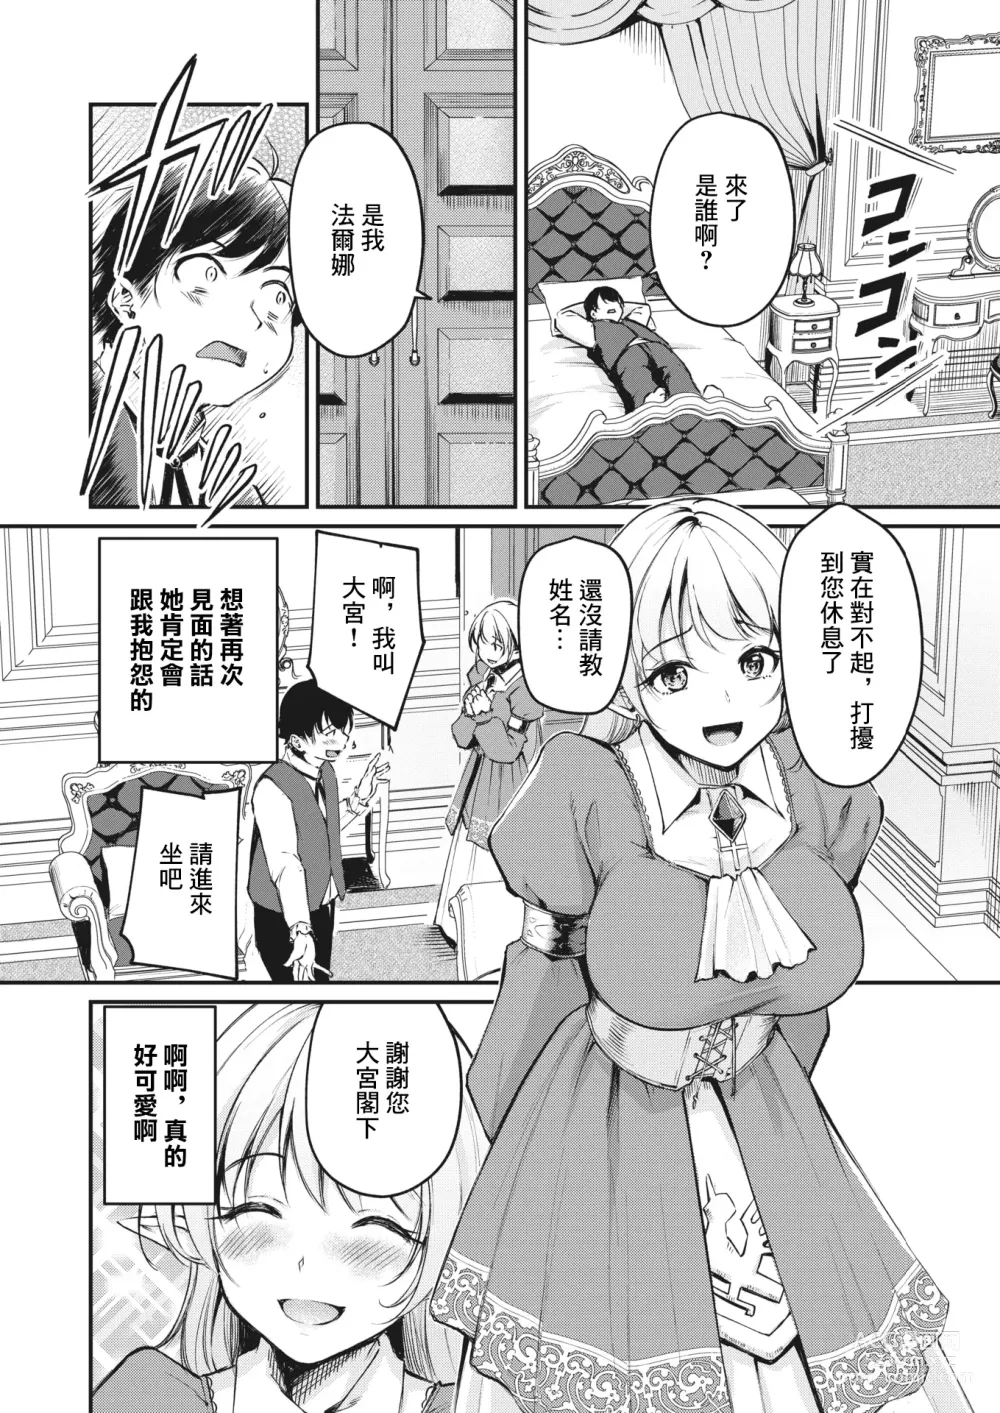 Page 6 of manga Hakoiri Elf no Oujo-sama